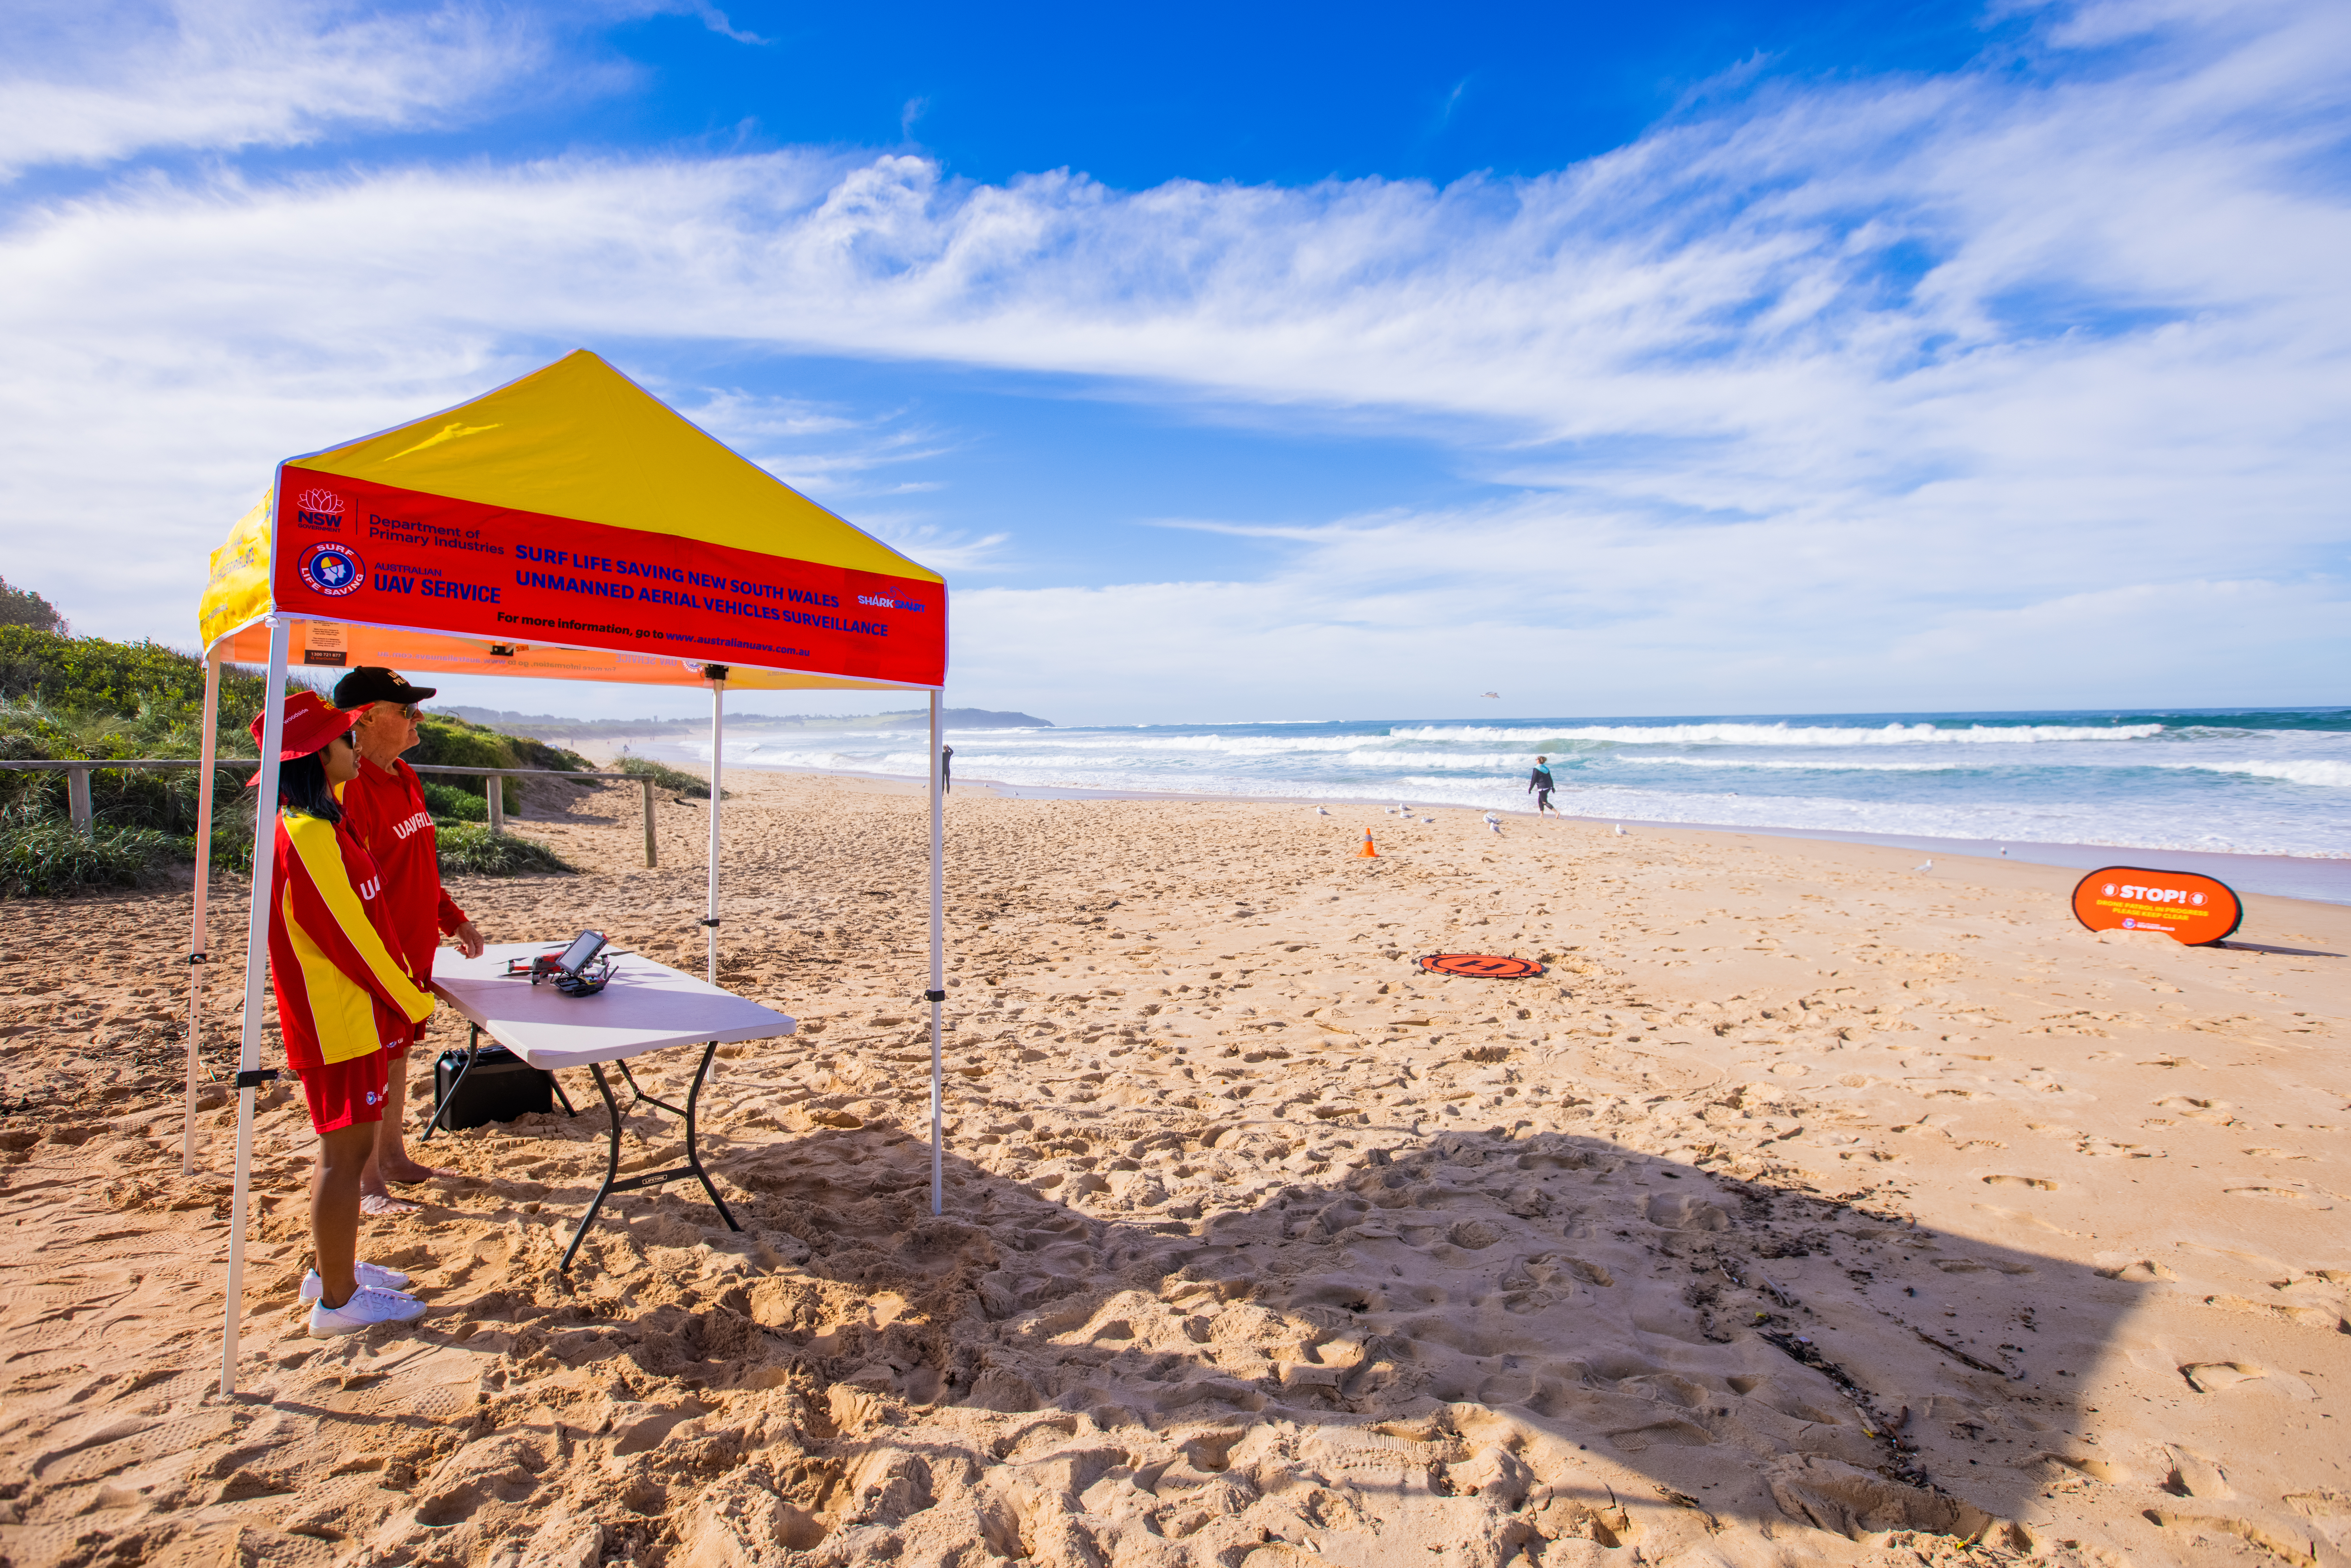 NSW Surf Life Saving pilots